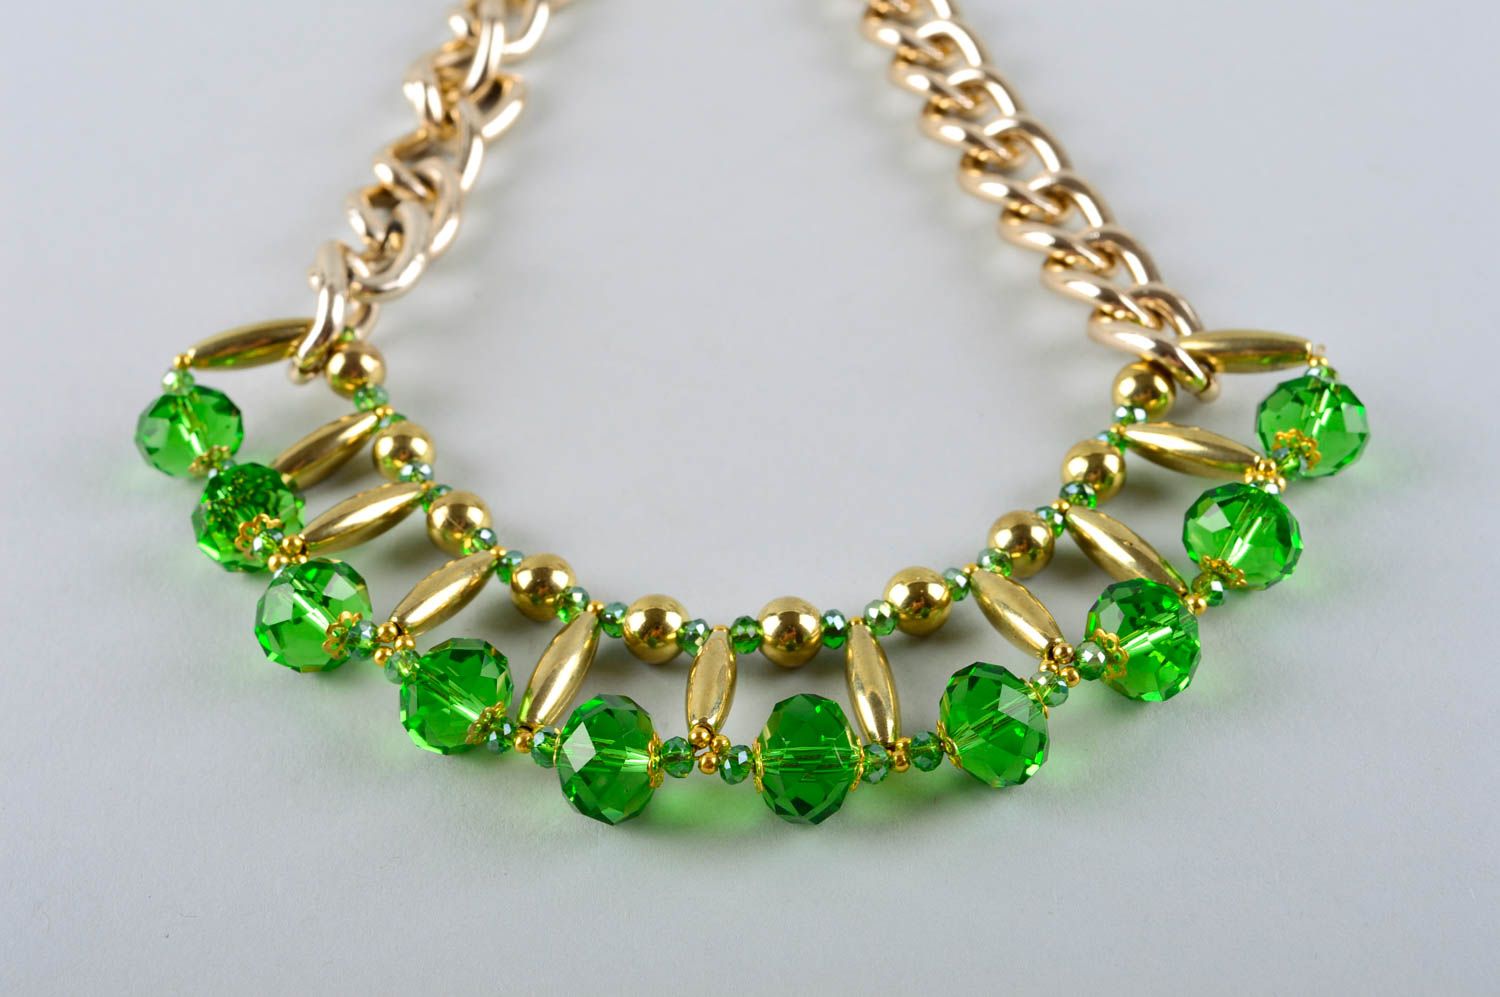 Collier fantaisie Accessoire fait main en métal et cristaux verts Cadeau femme photo 2